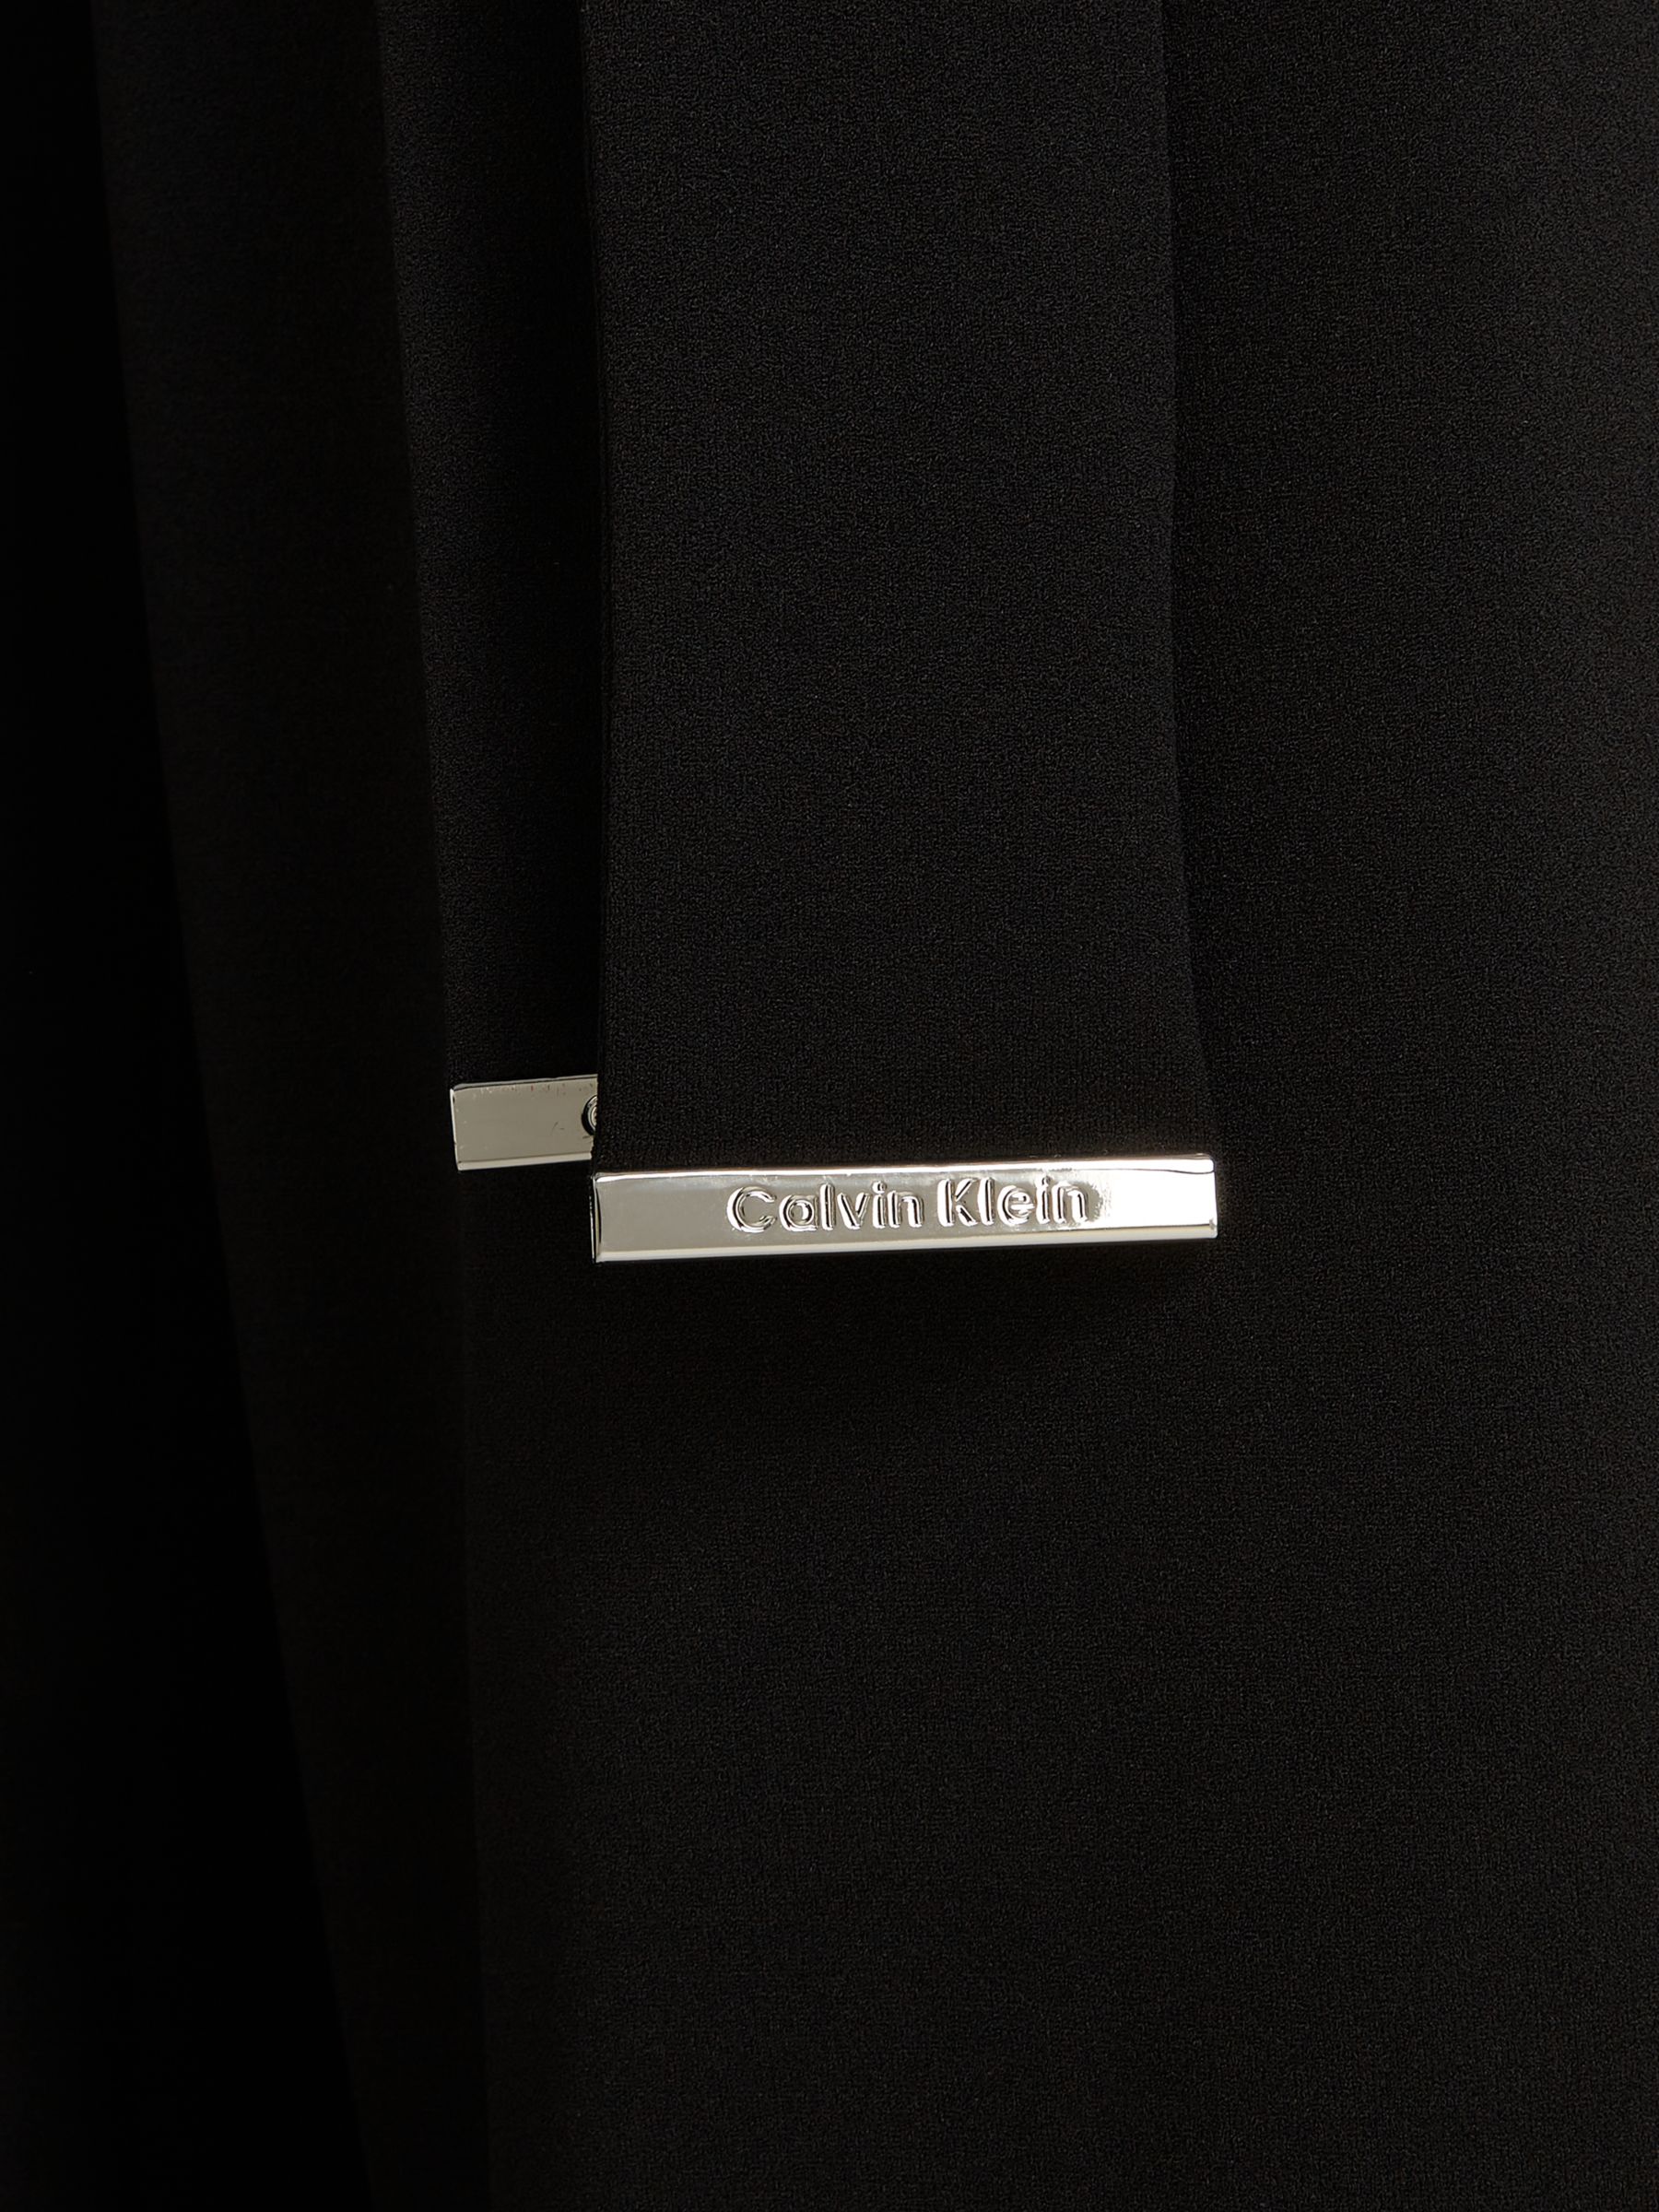 Calvin Klein Cutout Back Crepe Jumpsuit, Ck Black, 4